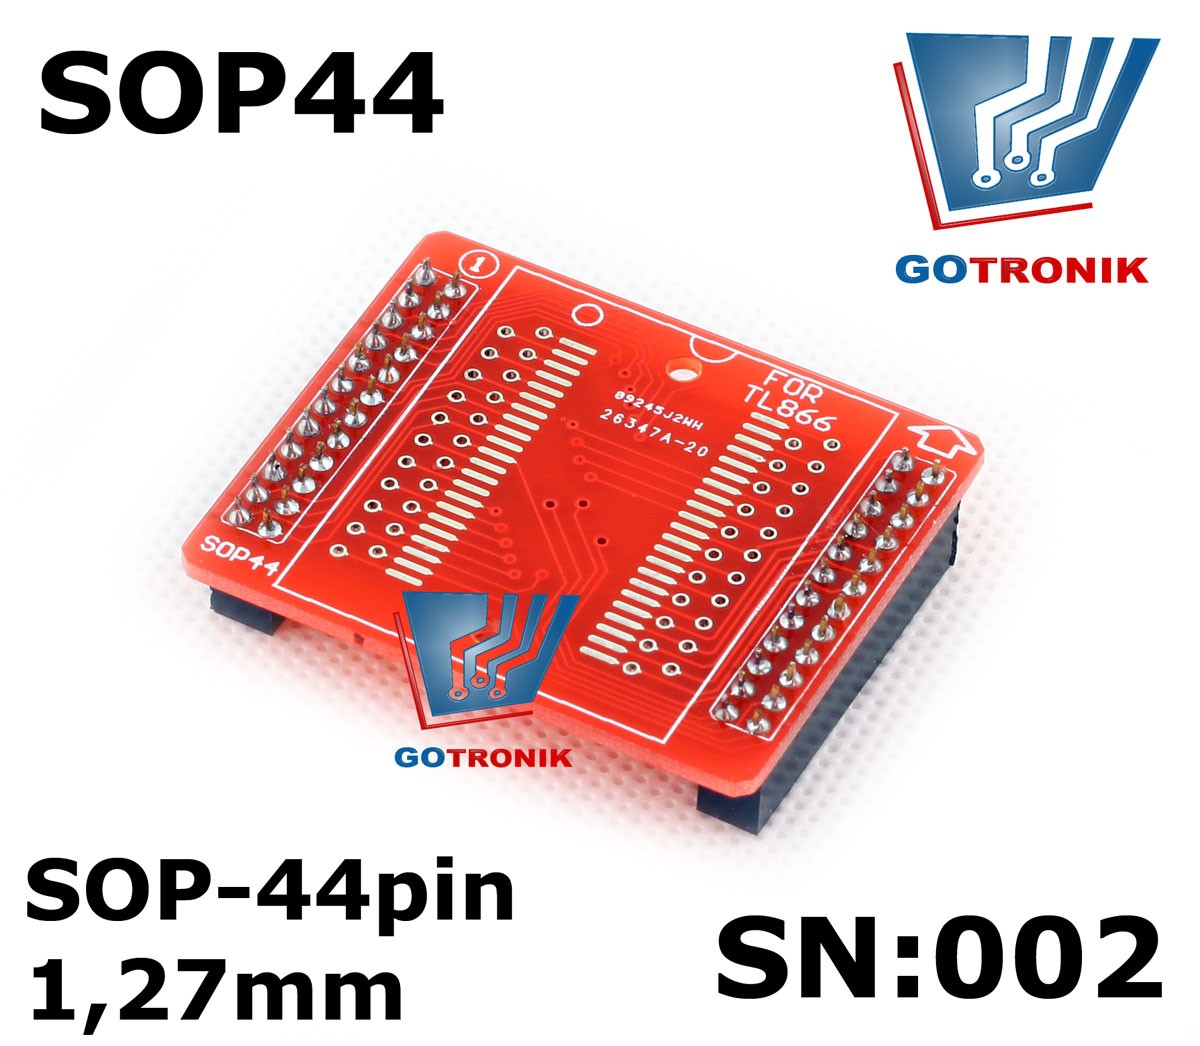 SN:002 Adapter SOP44 do programatorów TL866A/CS